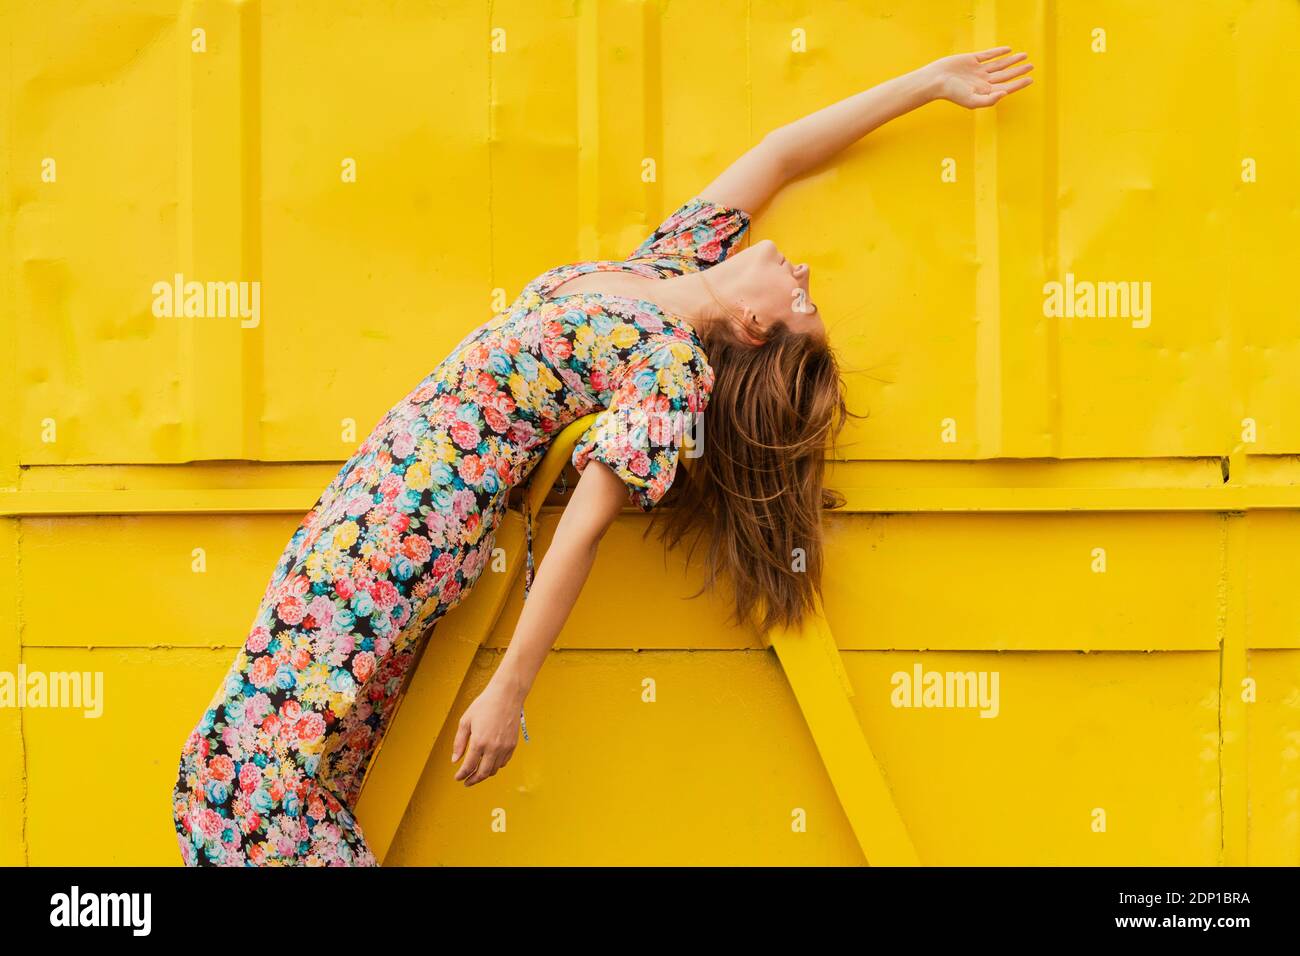 Donna in abito floreale che si piega sopra l'attacco di contenitore giallo Foto Stock